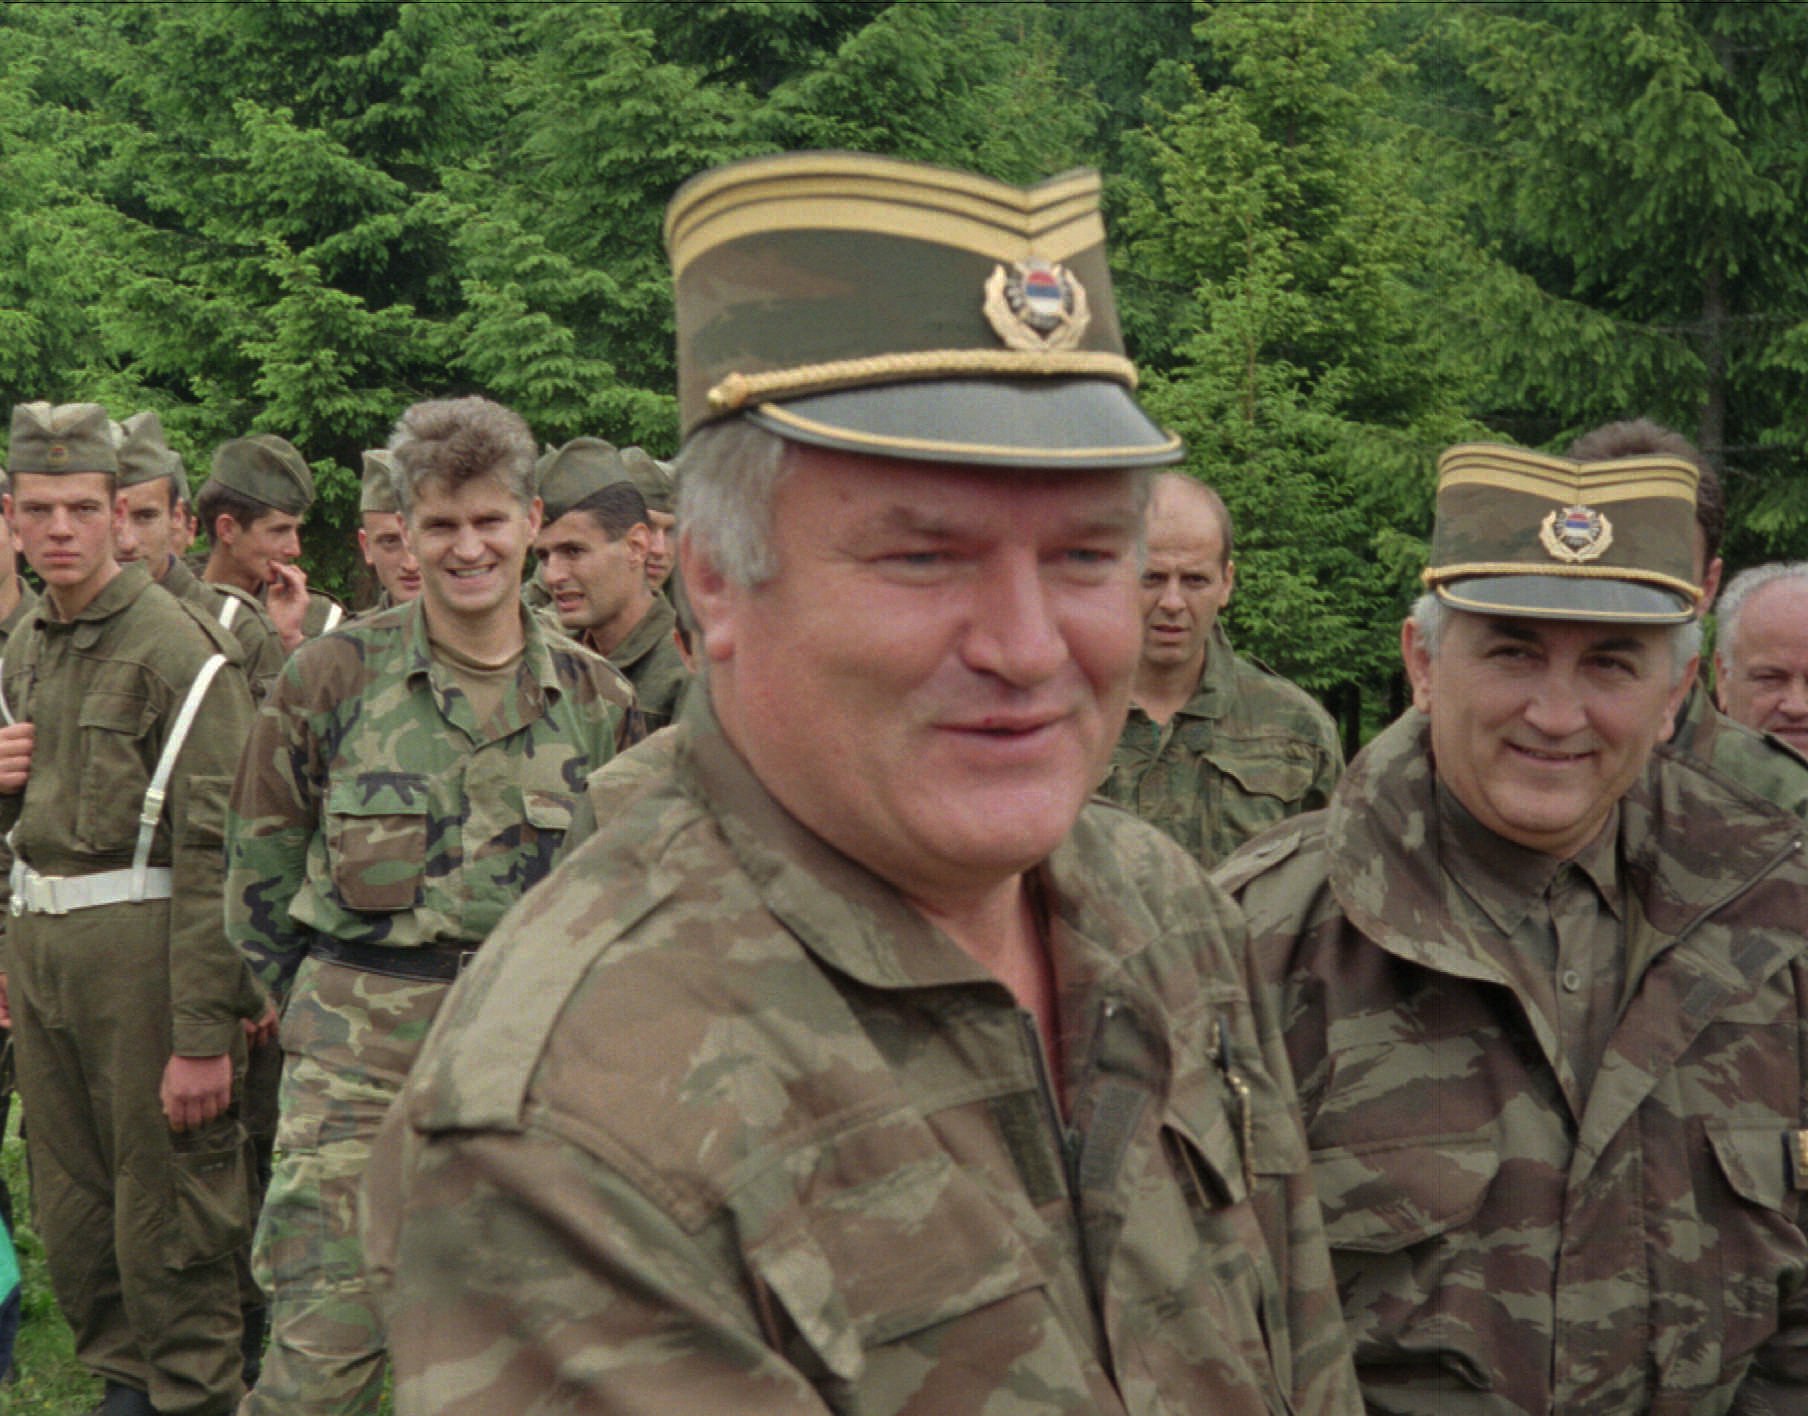 Folkmord, FN, Forna Jugoslavien, Etnisk rensning, Ratko Mladic, Srebrenica